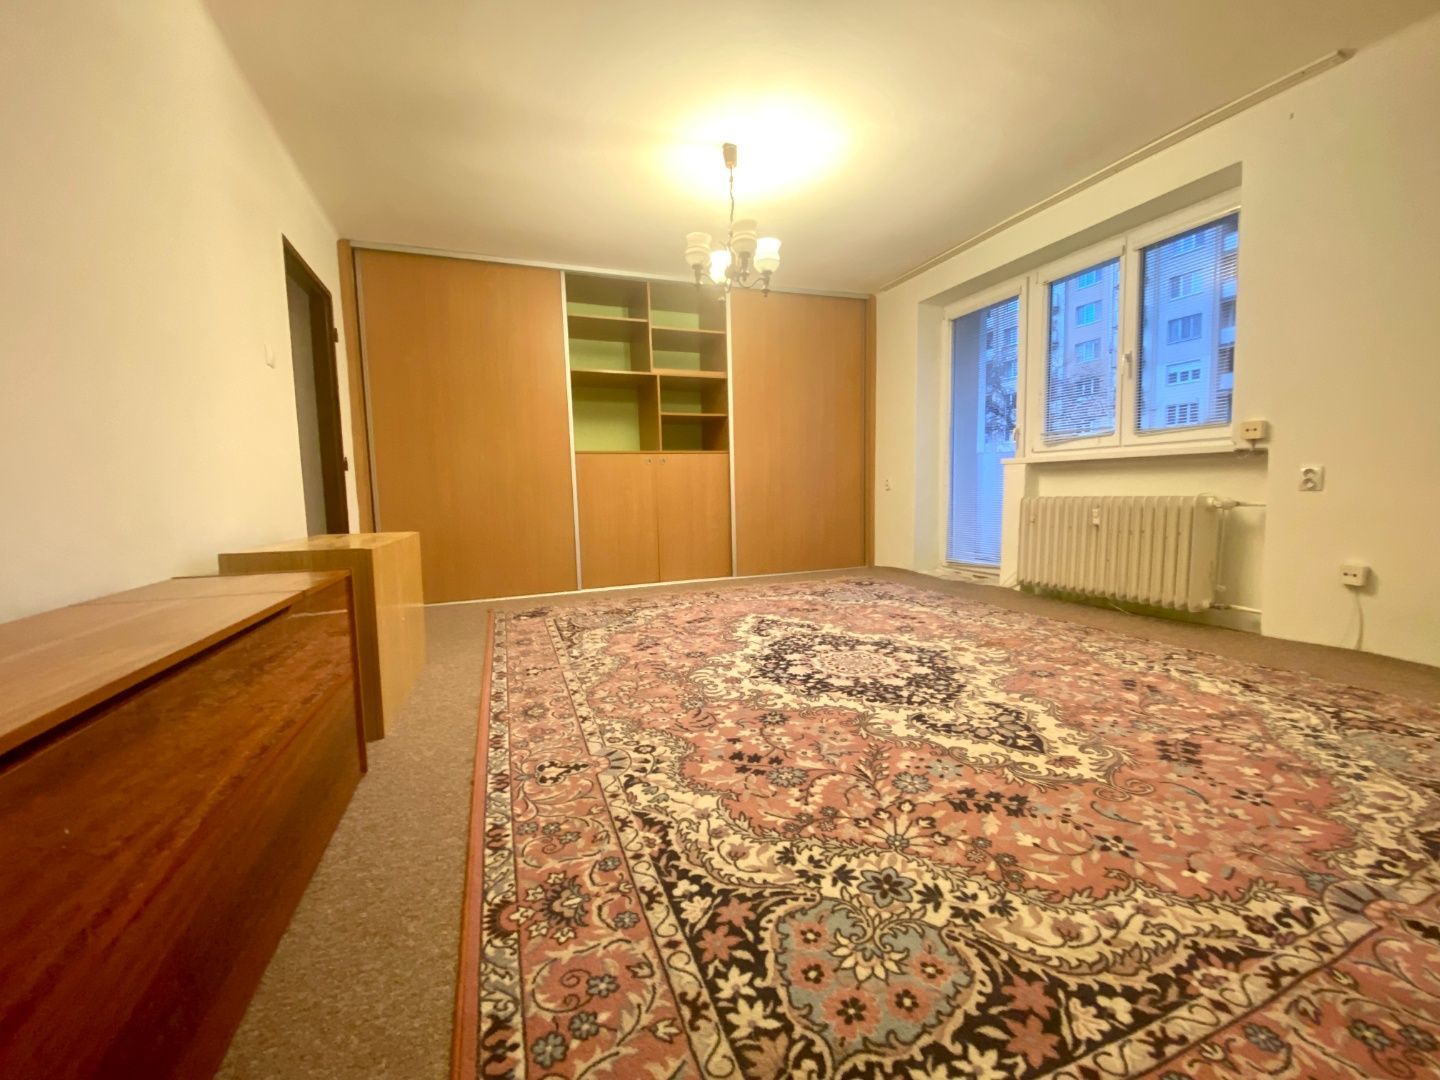 NA PREDAJ 3 izbový byt Nové Mesto nad Váhom, SNP, čiastočná rekonštrukcia